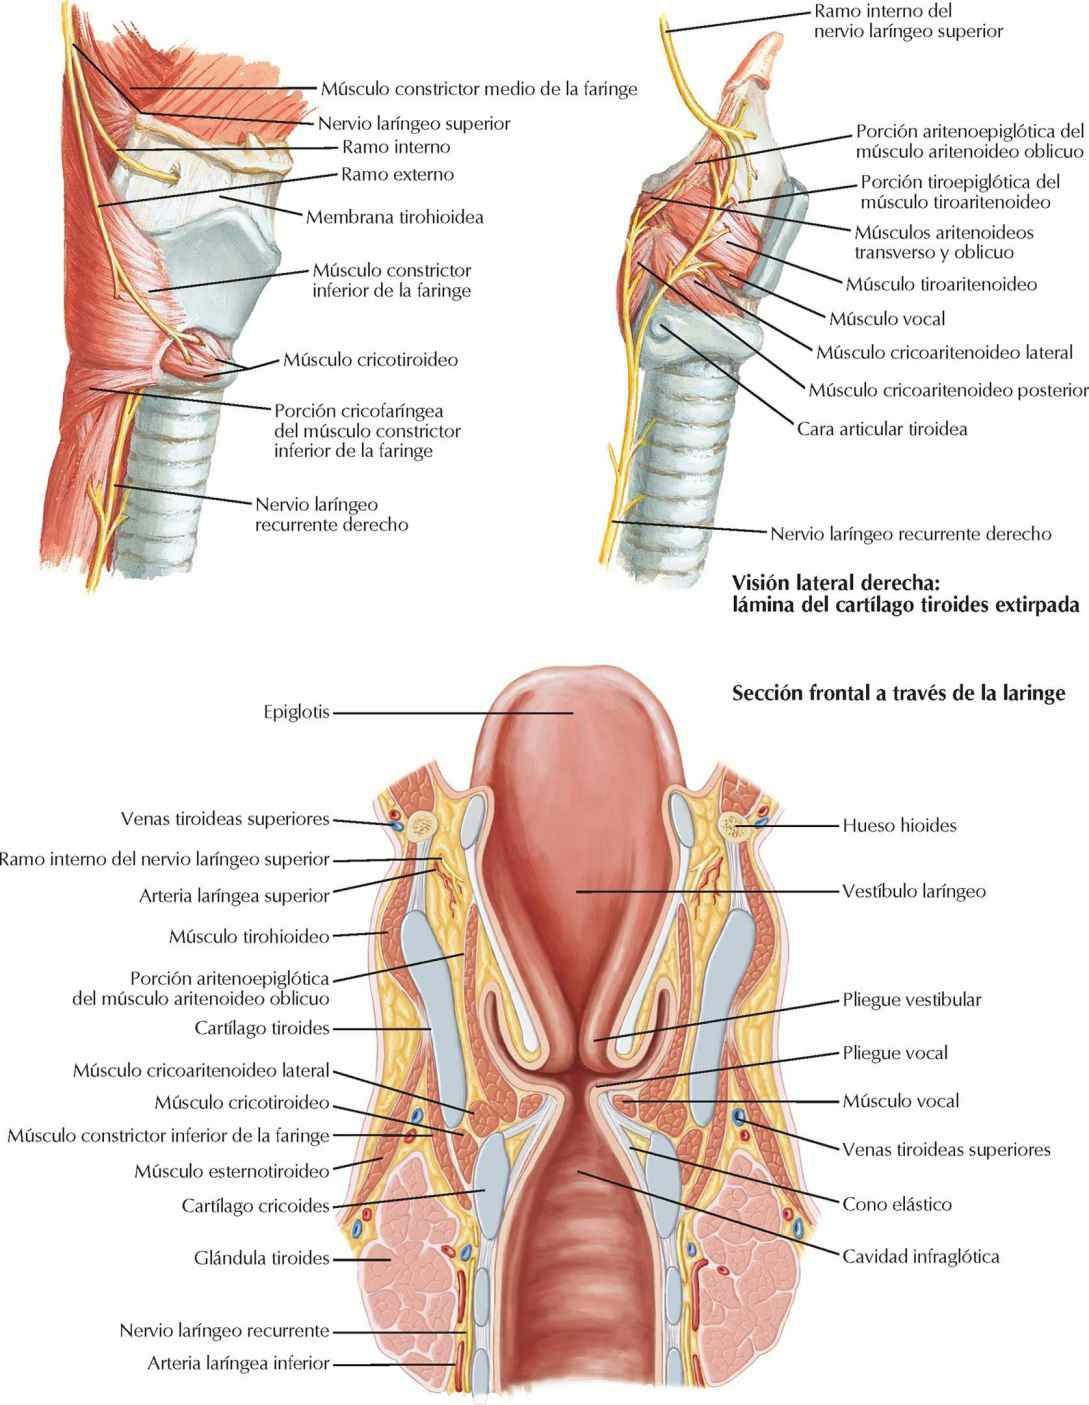 Nervios y sección frontal de la laringe.